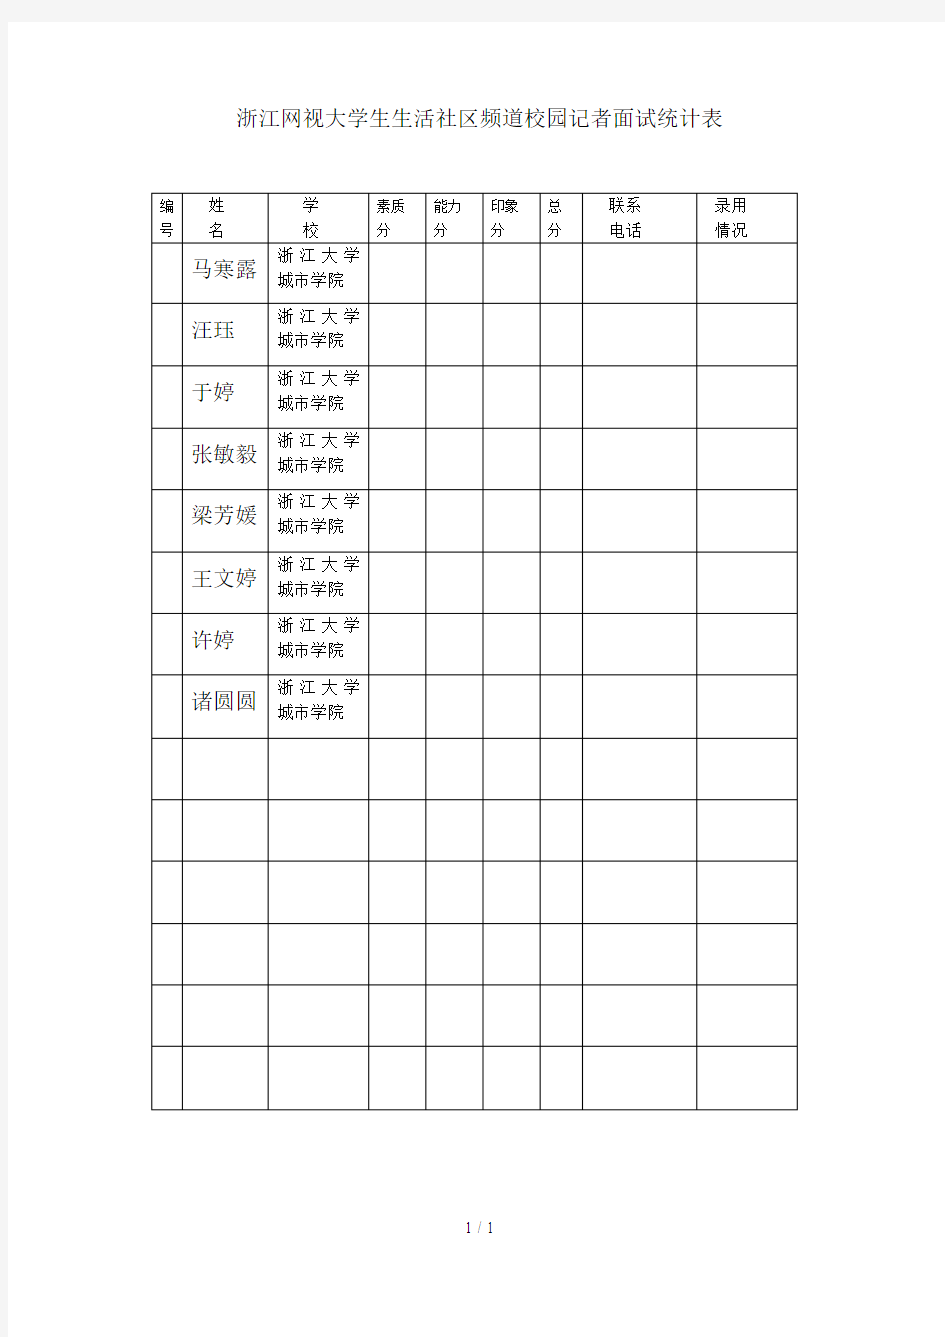 浙江网视大学生生活社区频道校园记者面试统计表